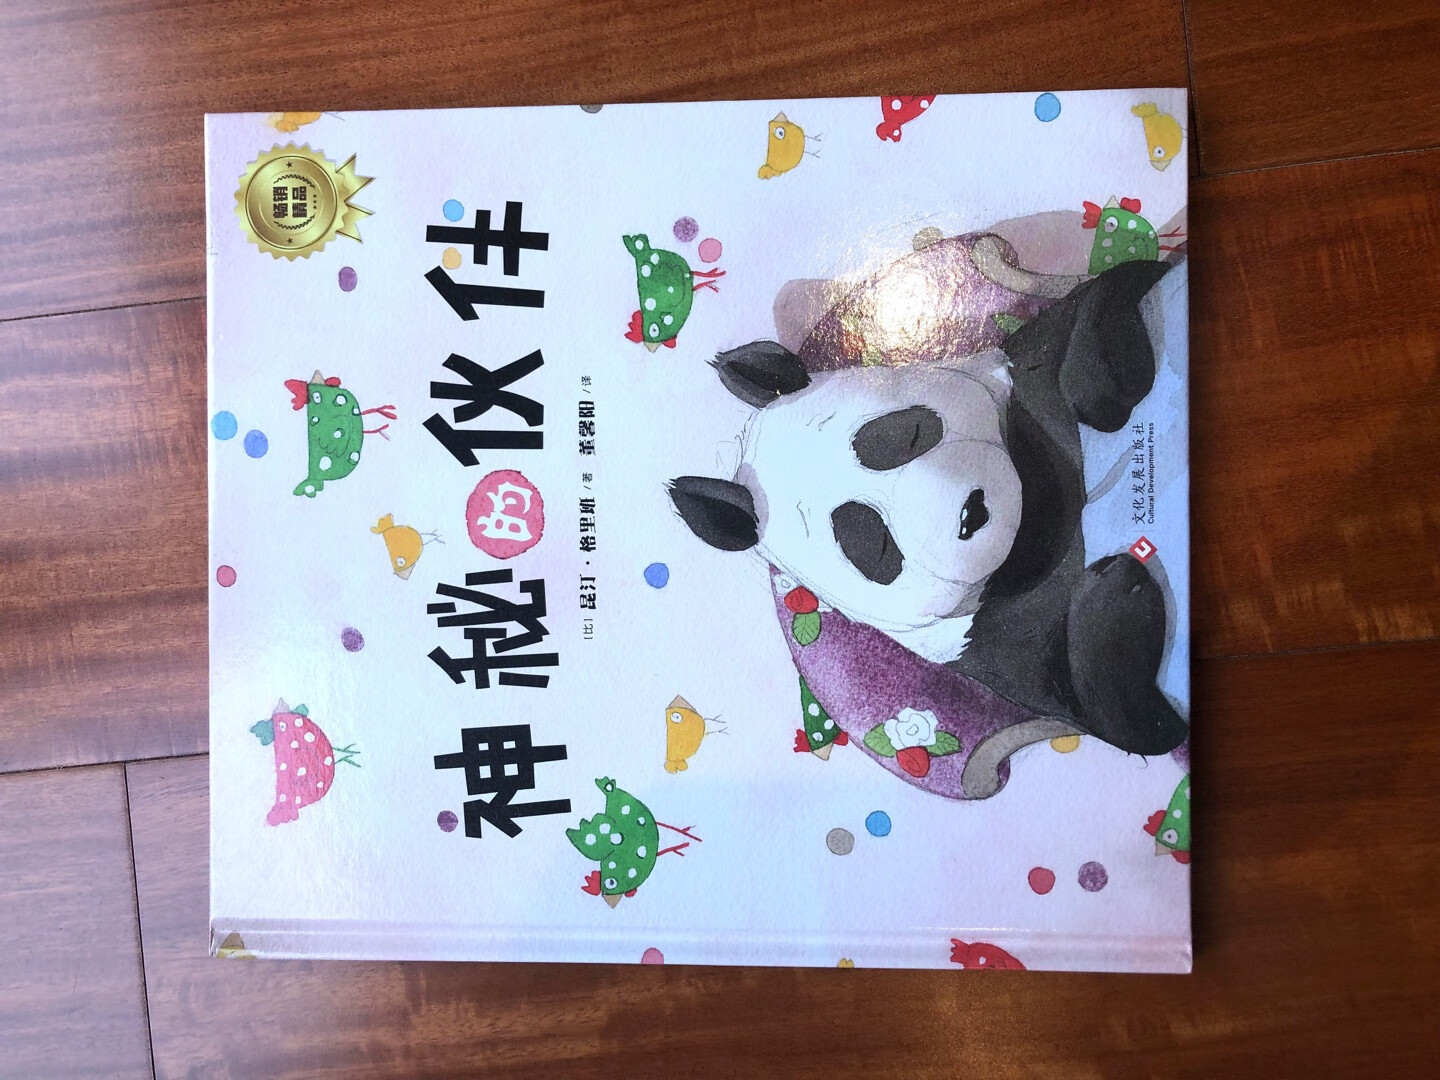 好喜欢这个画风三岁娃很喜欢熊猫这个故事投其所好